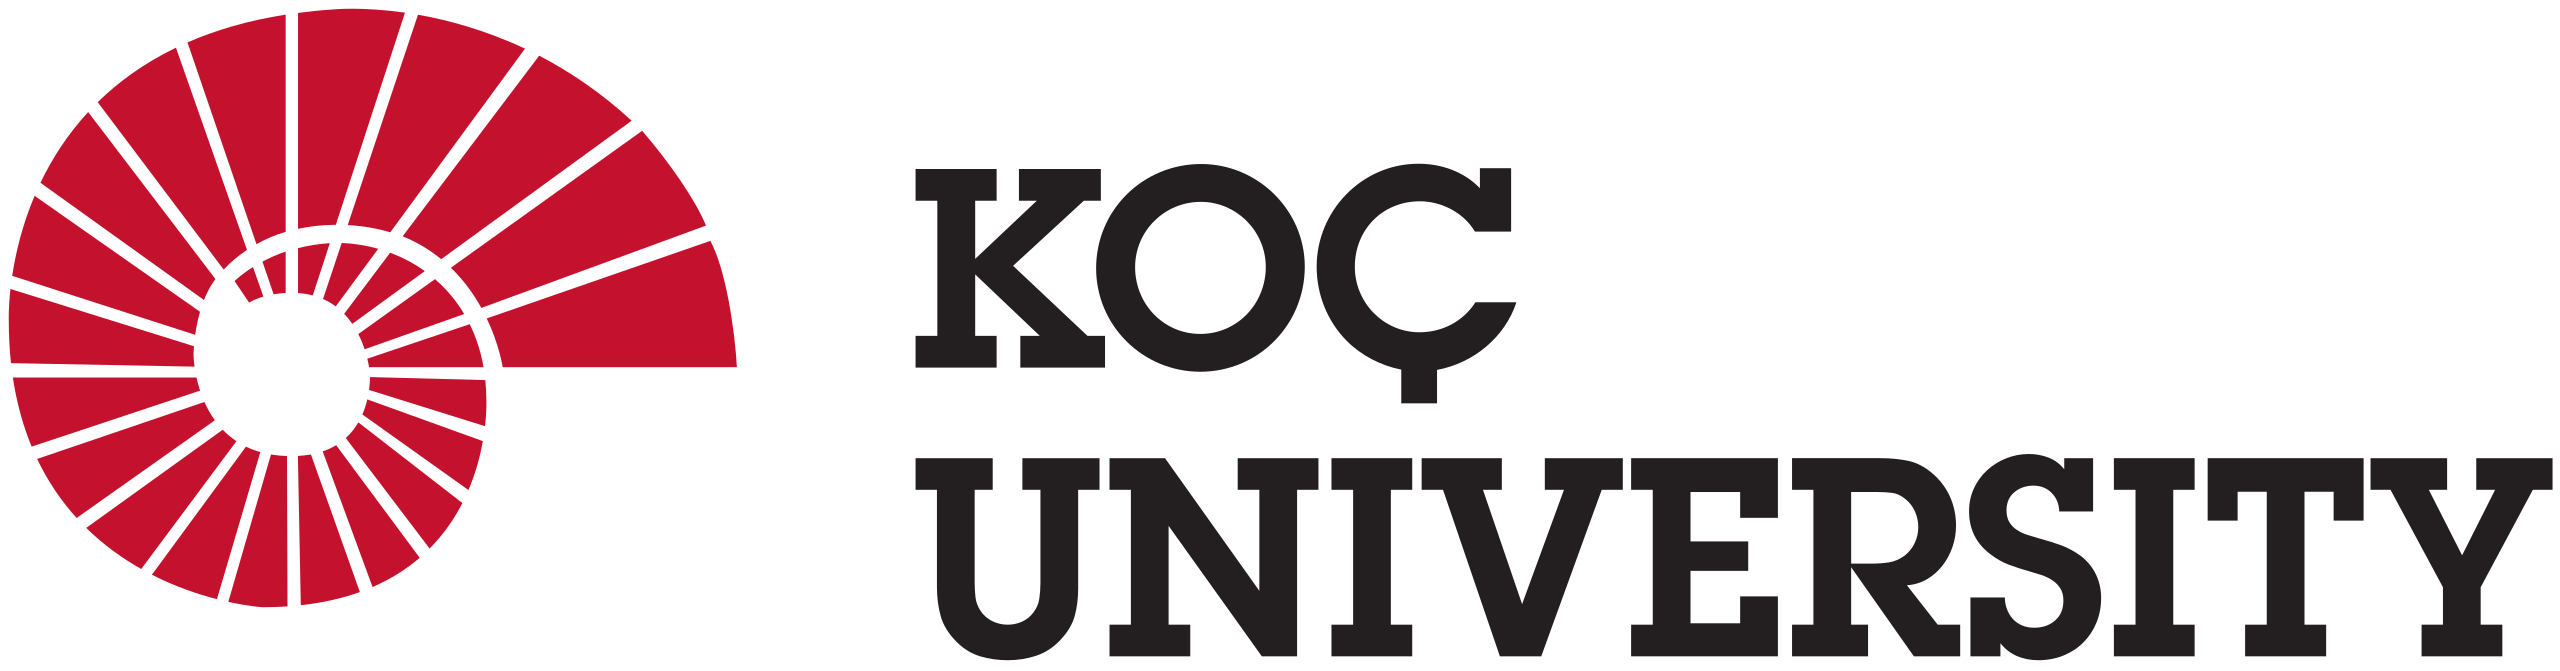 Koc University logo